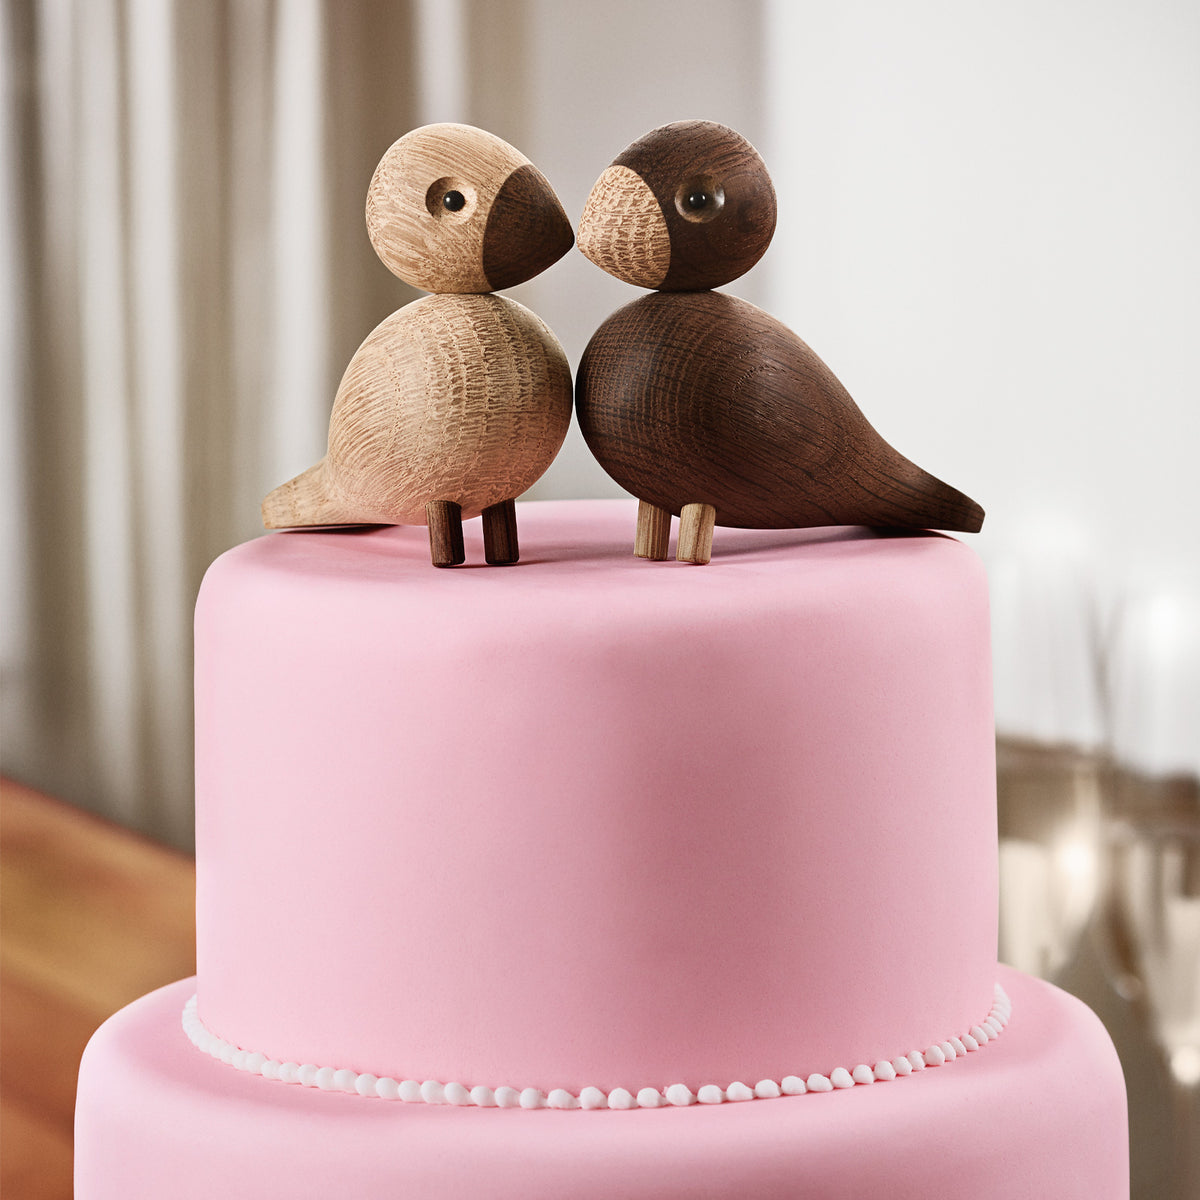 The Kay Bojesen Lovebirds on top of wedding cake